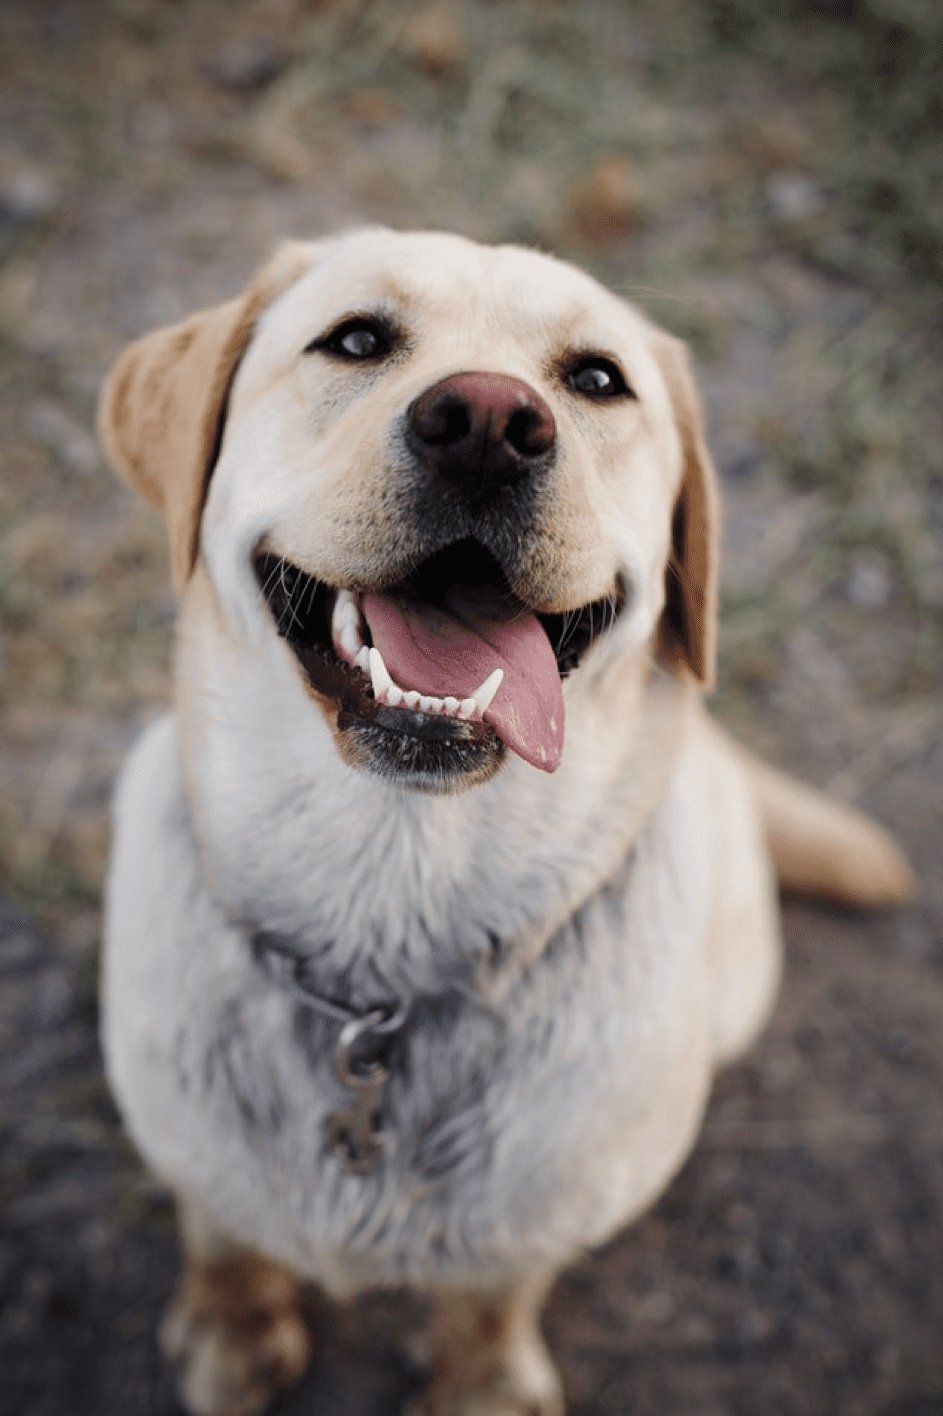 Der Hund war ein Deutscher Schäferhund, dem die Zunge aus dem Maul hing. | Quelle: Pexels